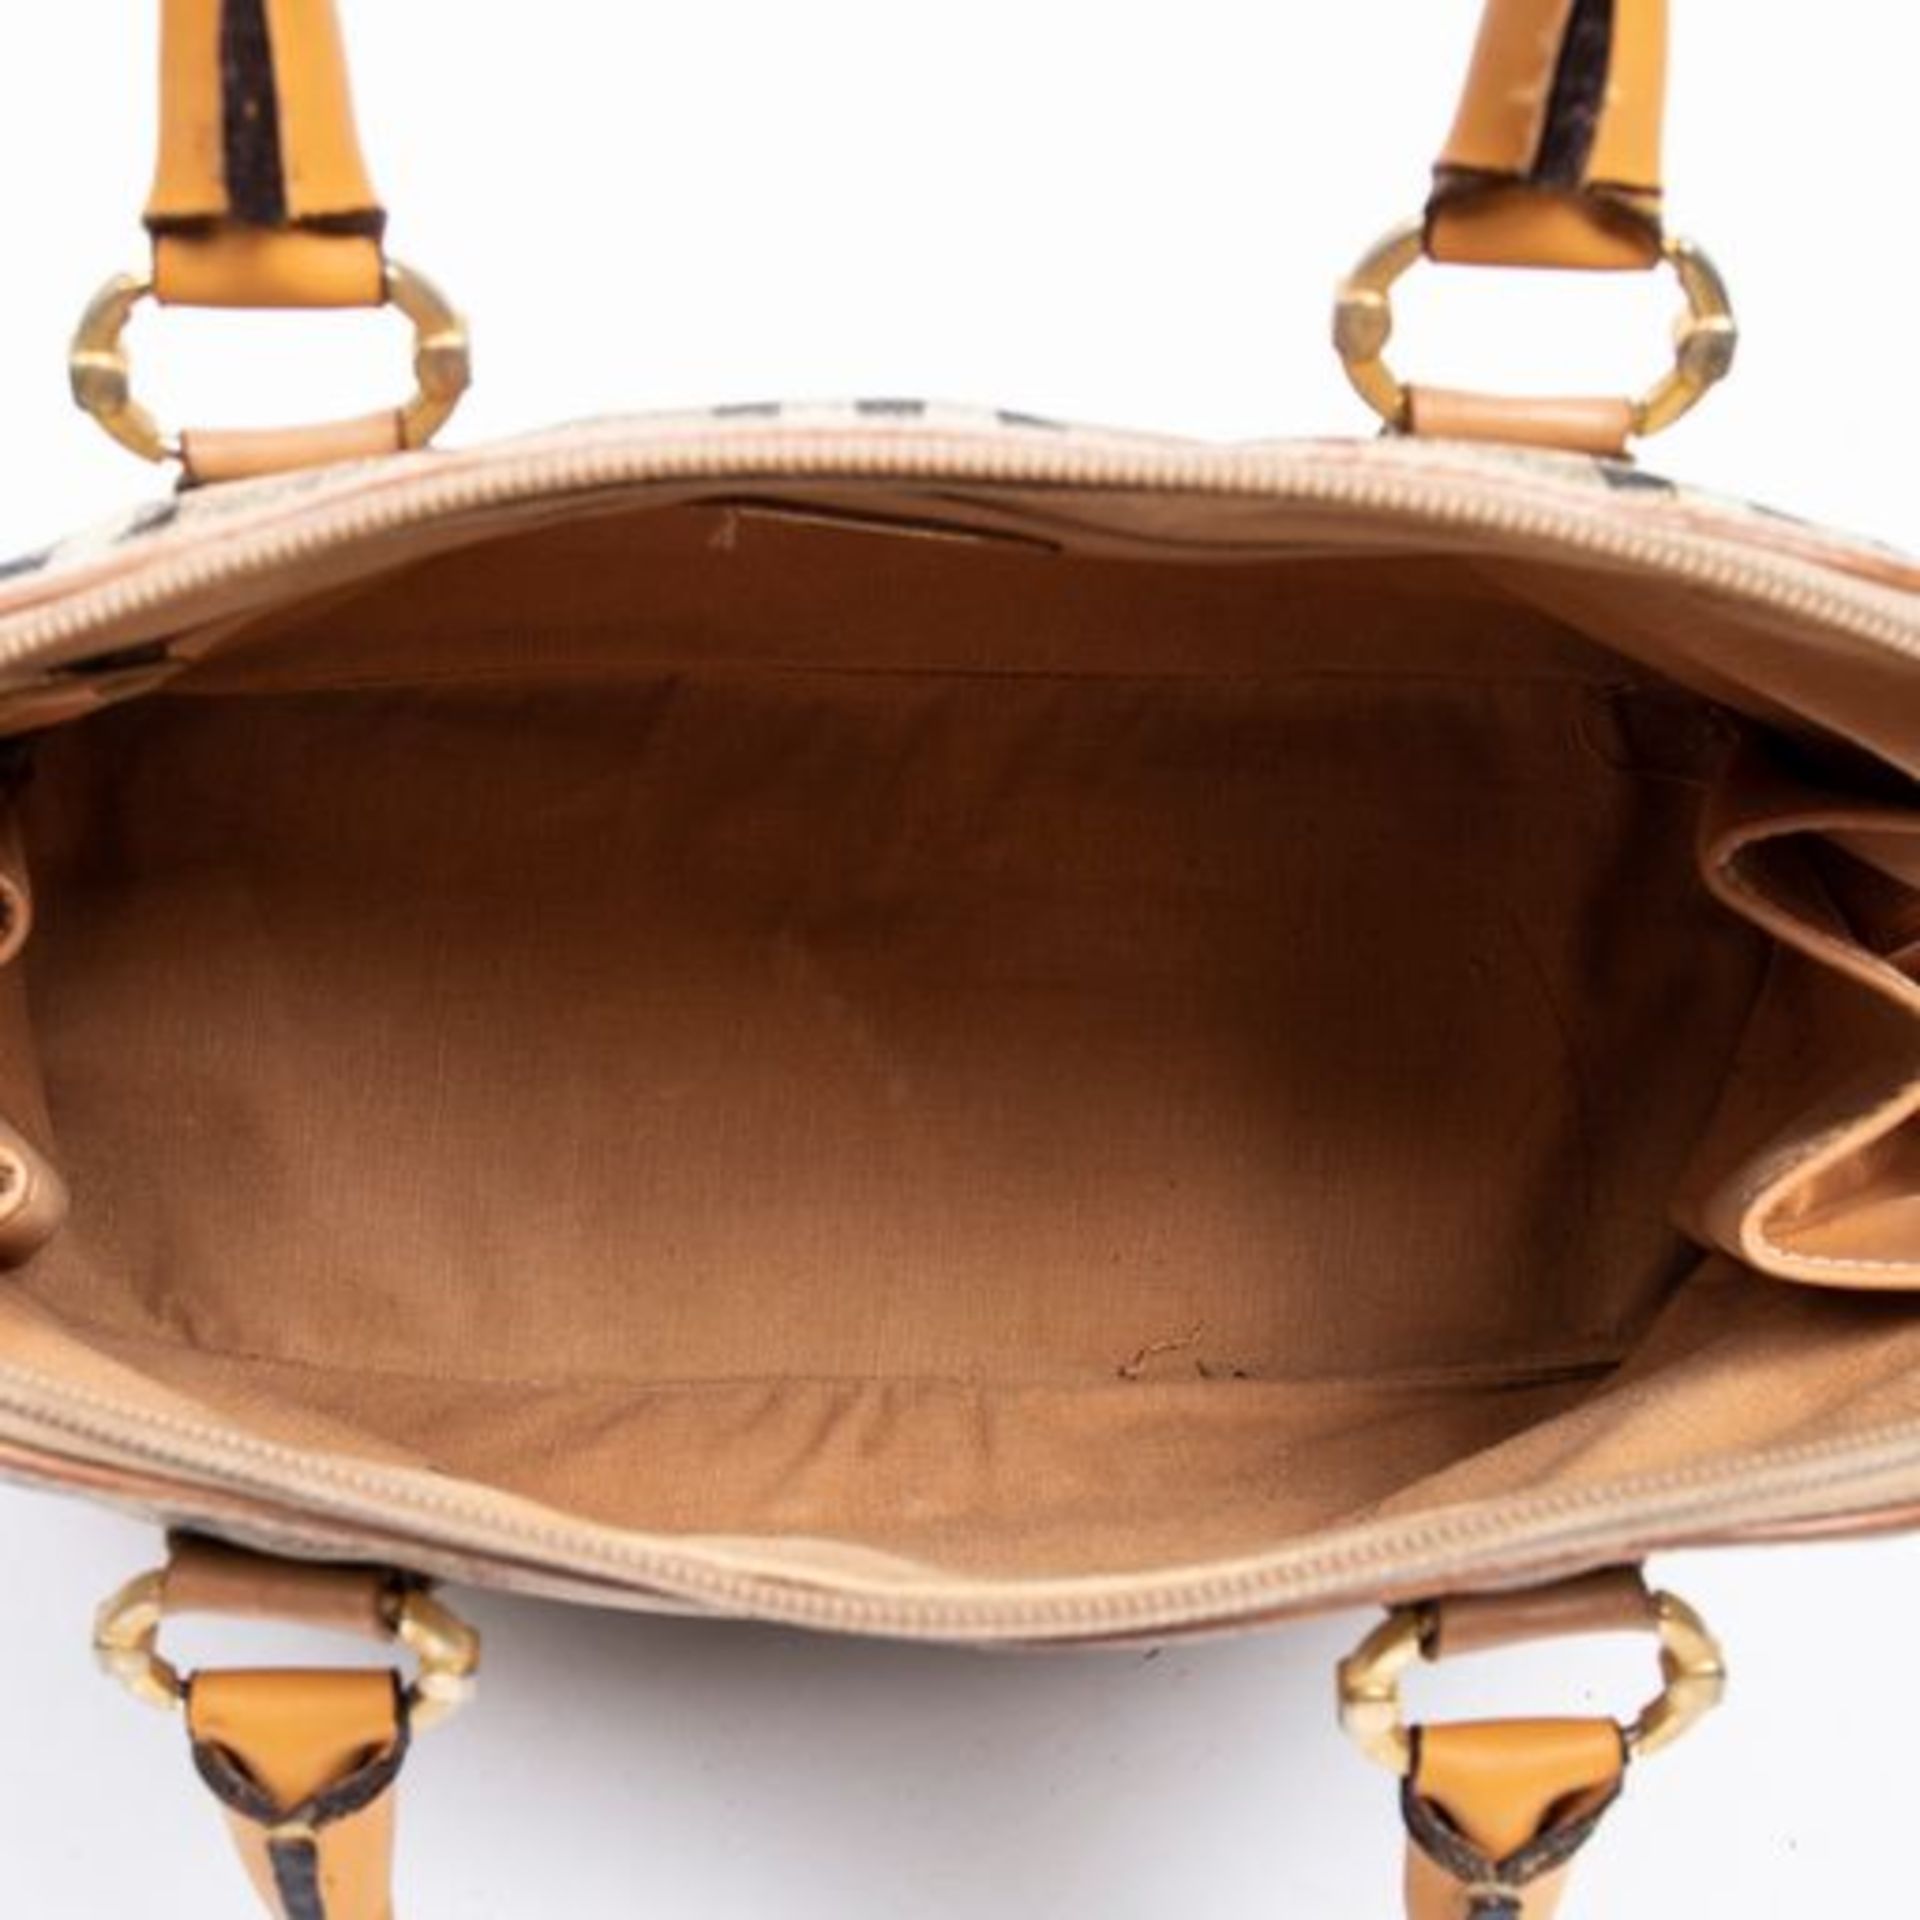 RRP £760 Burberry Burberrys Vintage Dome Handbag Beige/Brown/Orange - AAR0321 - Grade AB - (Bags Are - Image 4 of 6